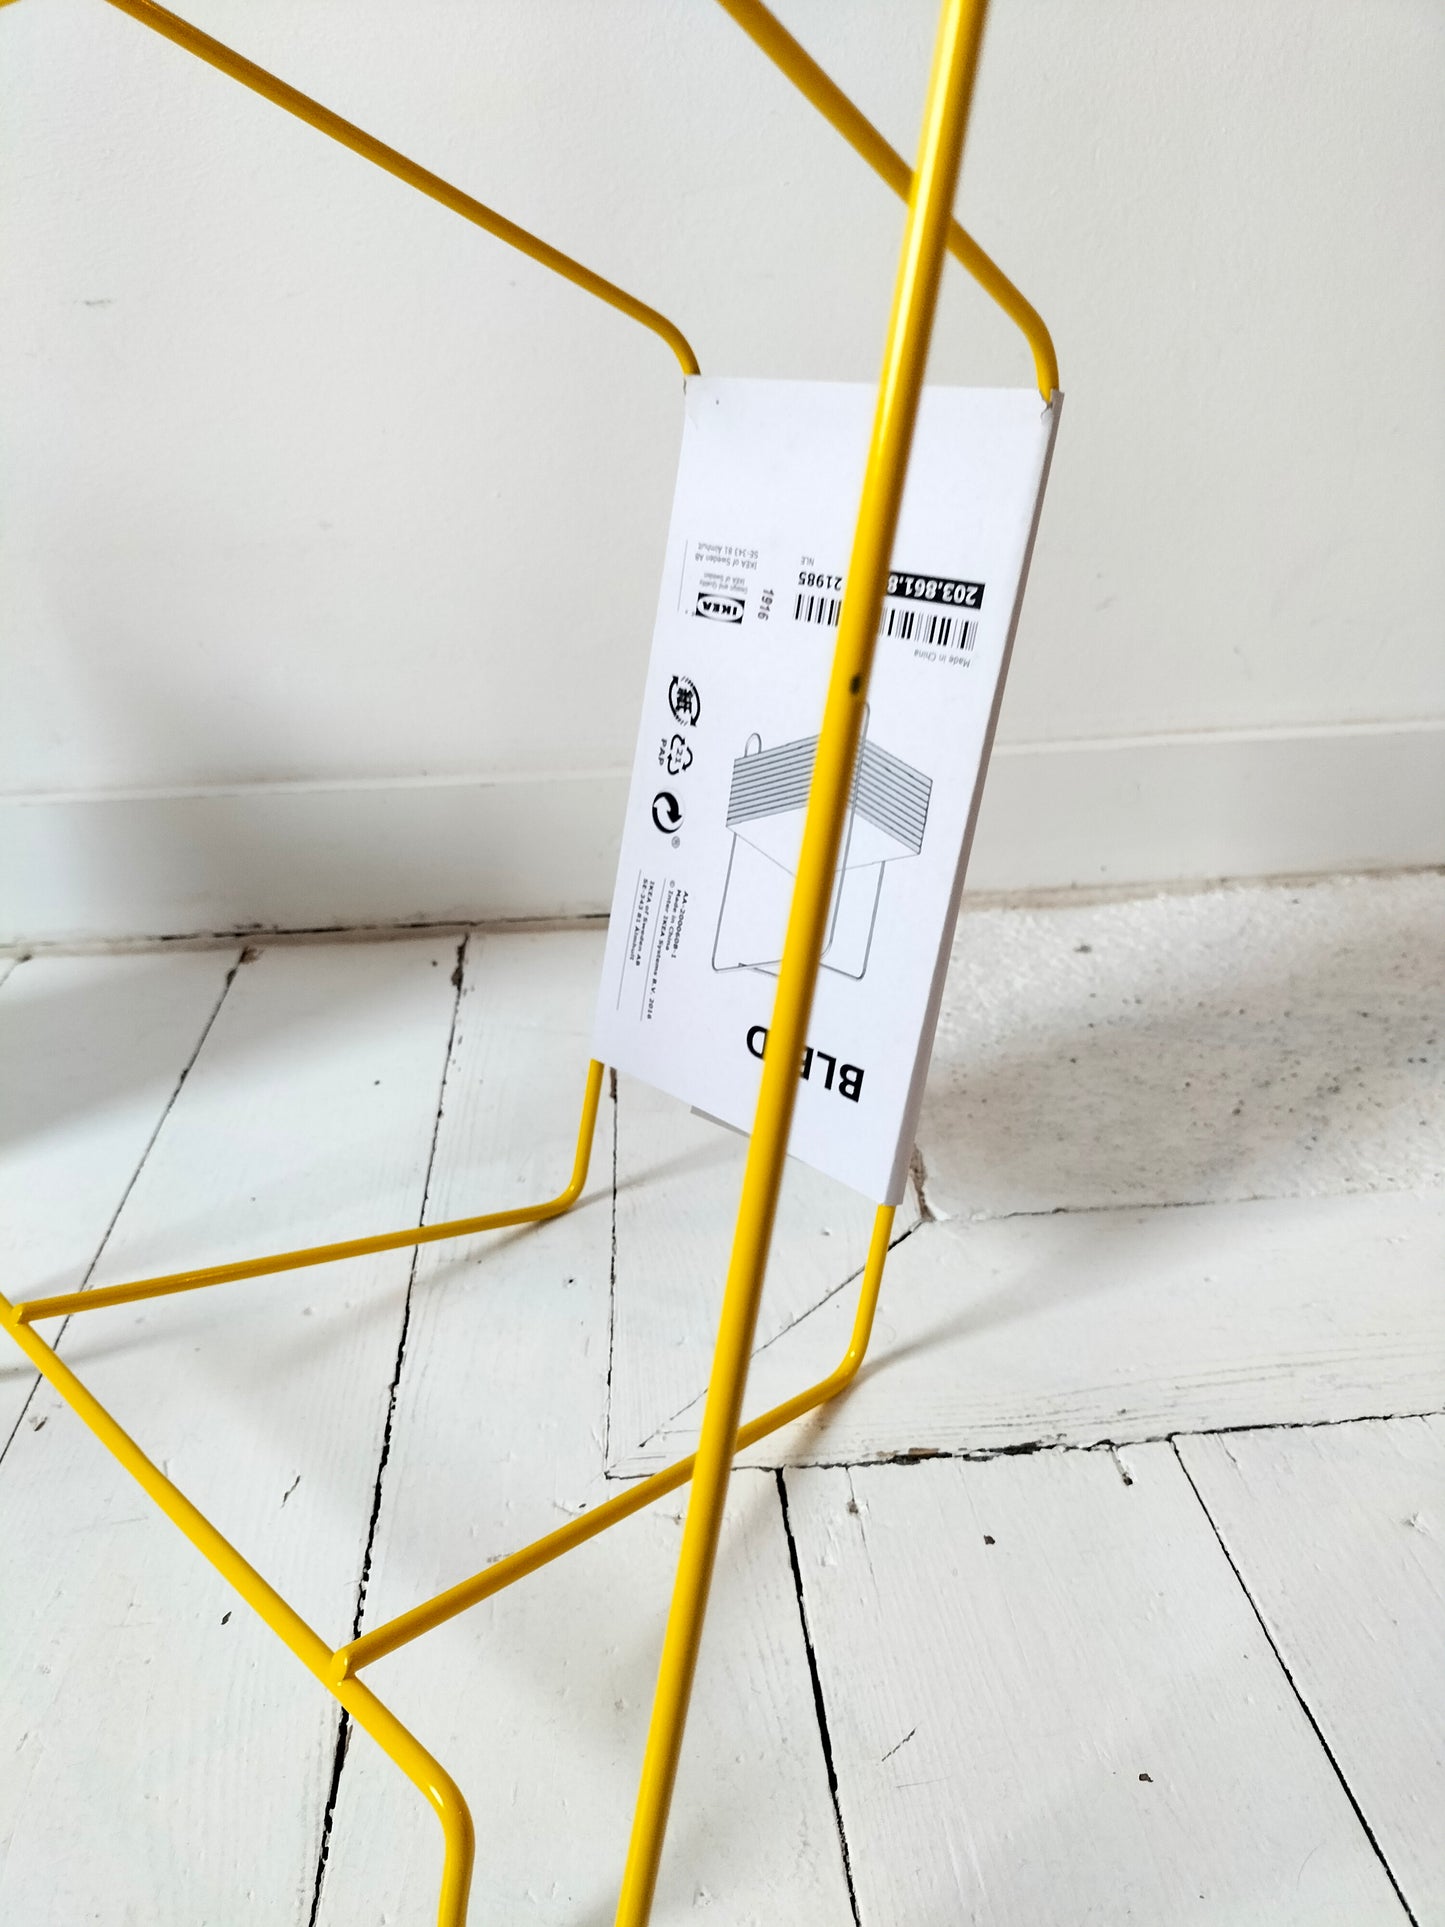 Porte-revues/ livres Ikea Blejd 2016